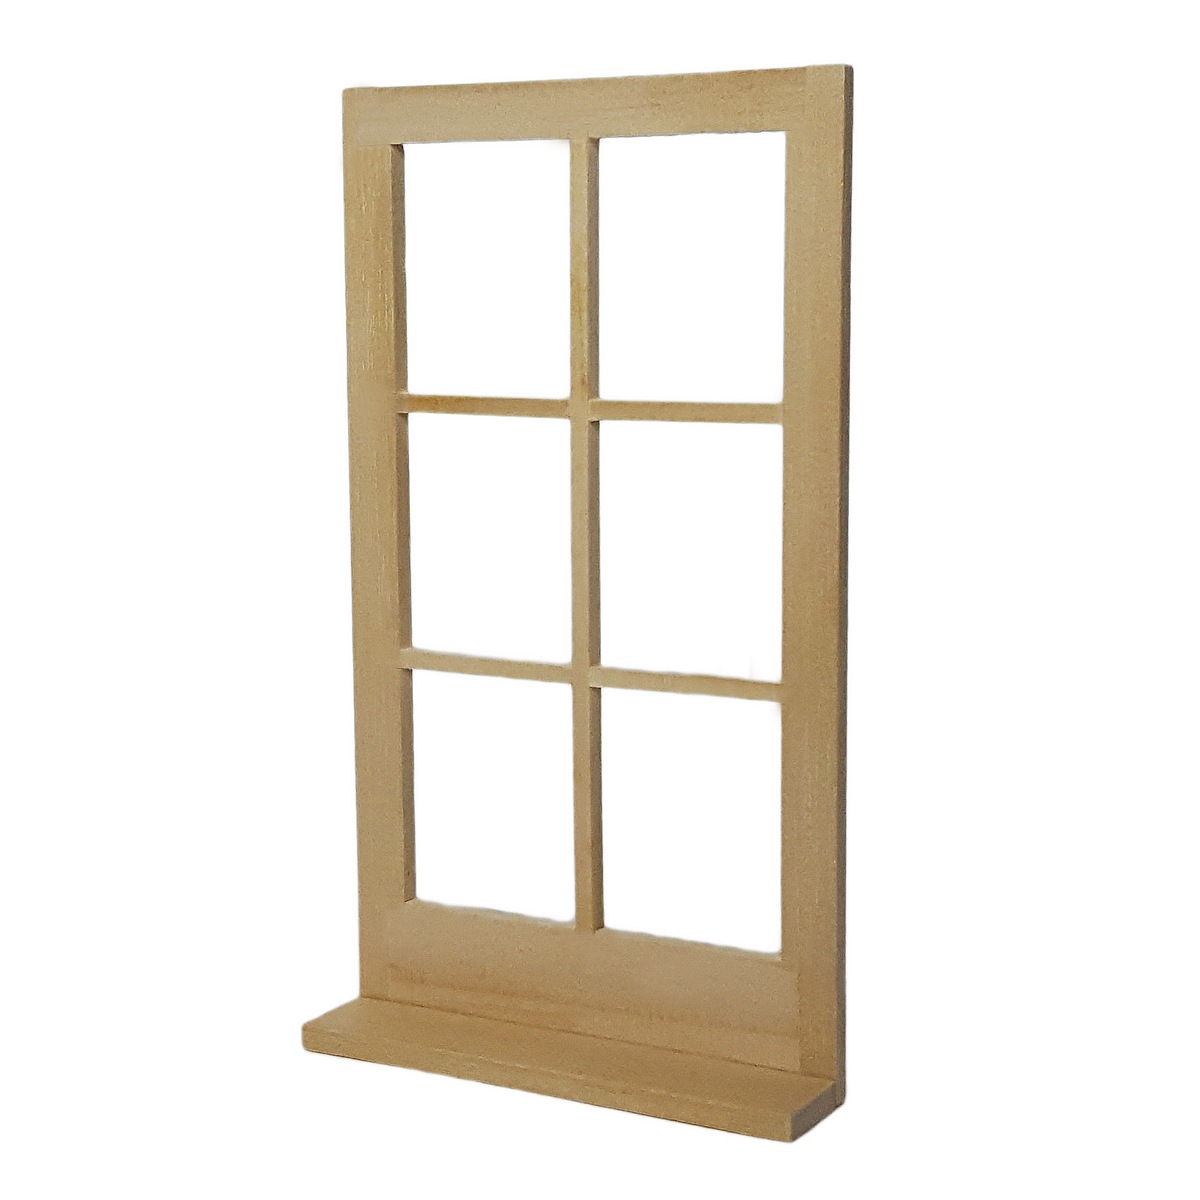 Fenster Attrappe, ideal für die MODUL BOX